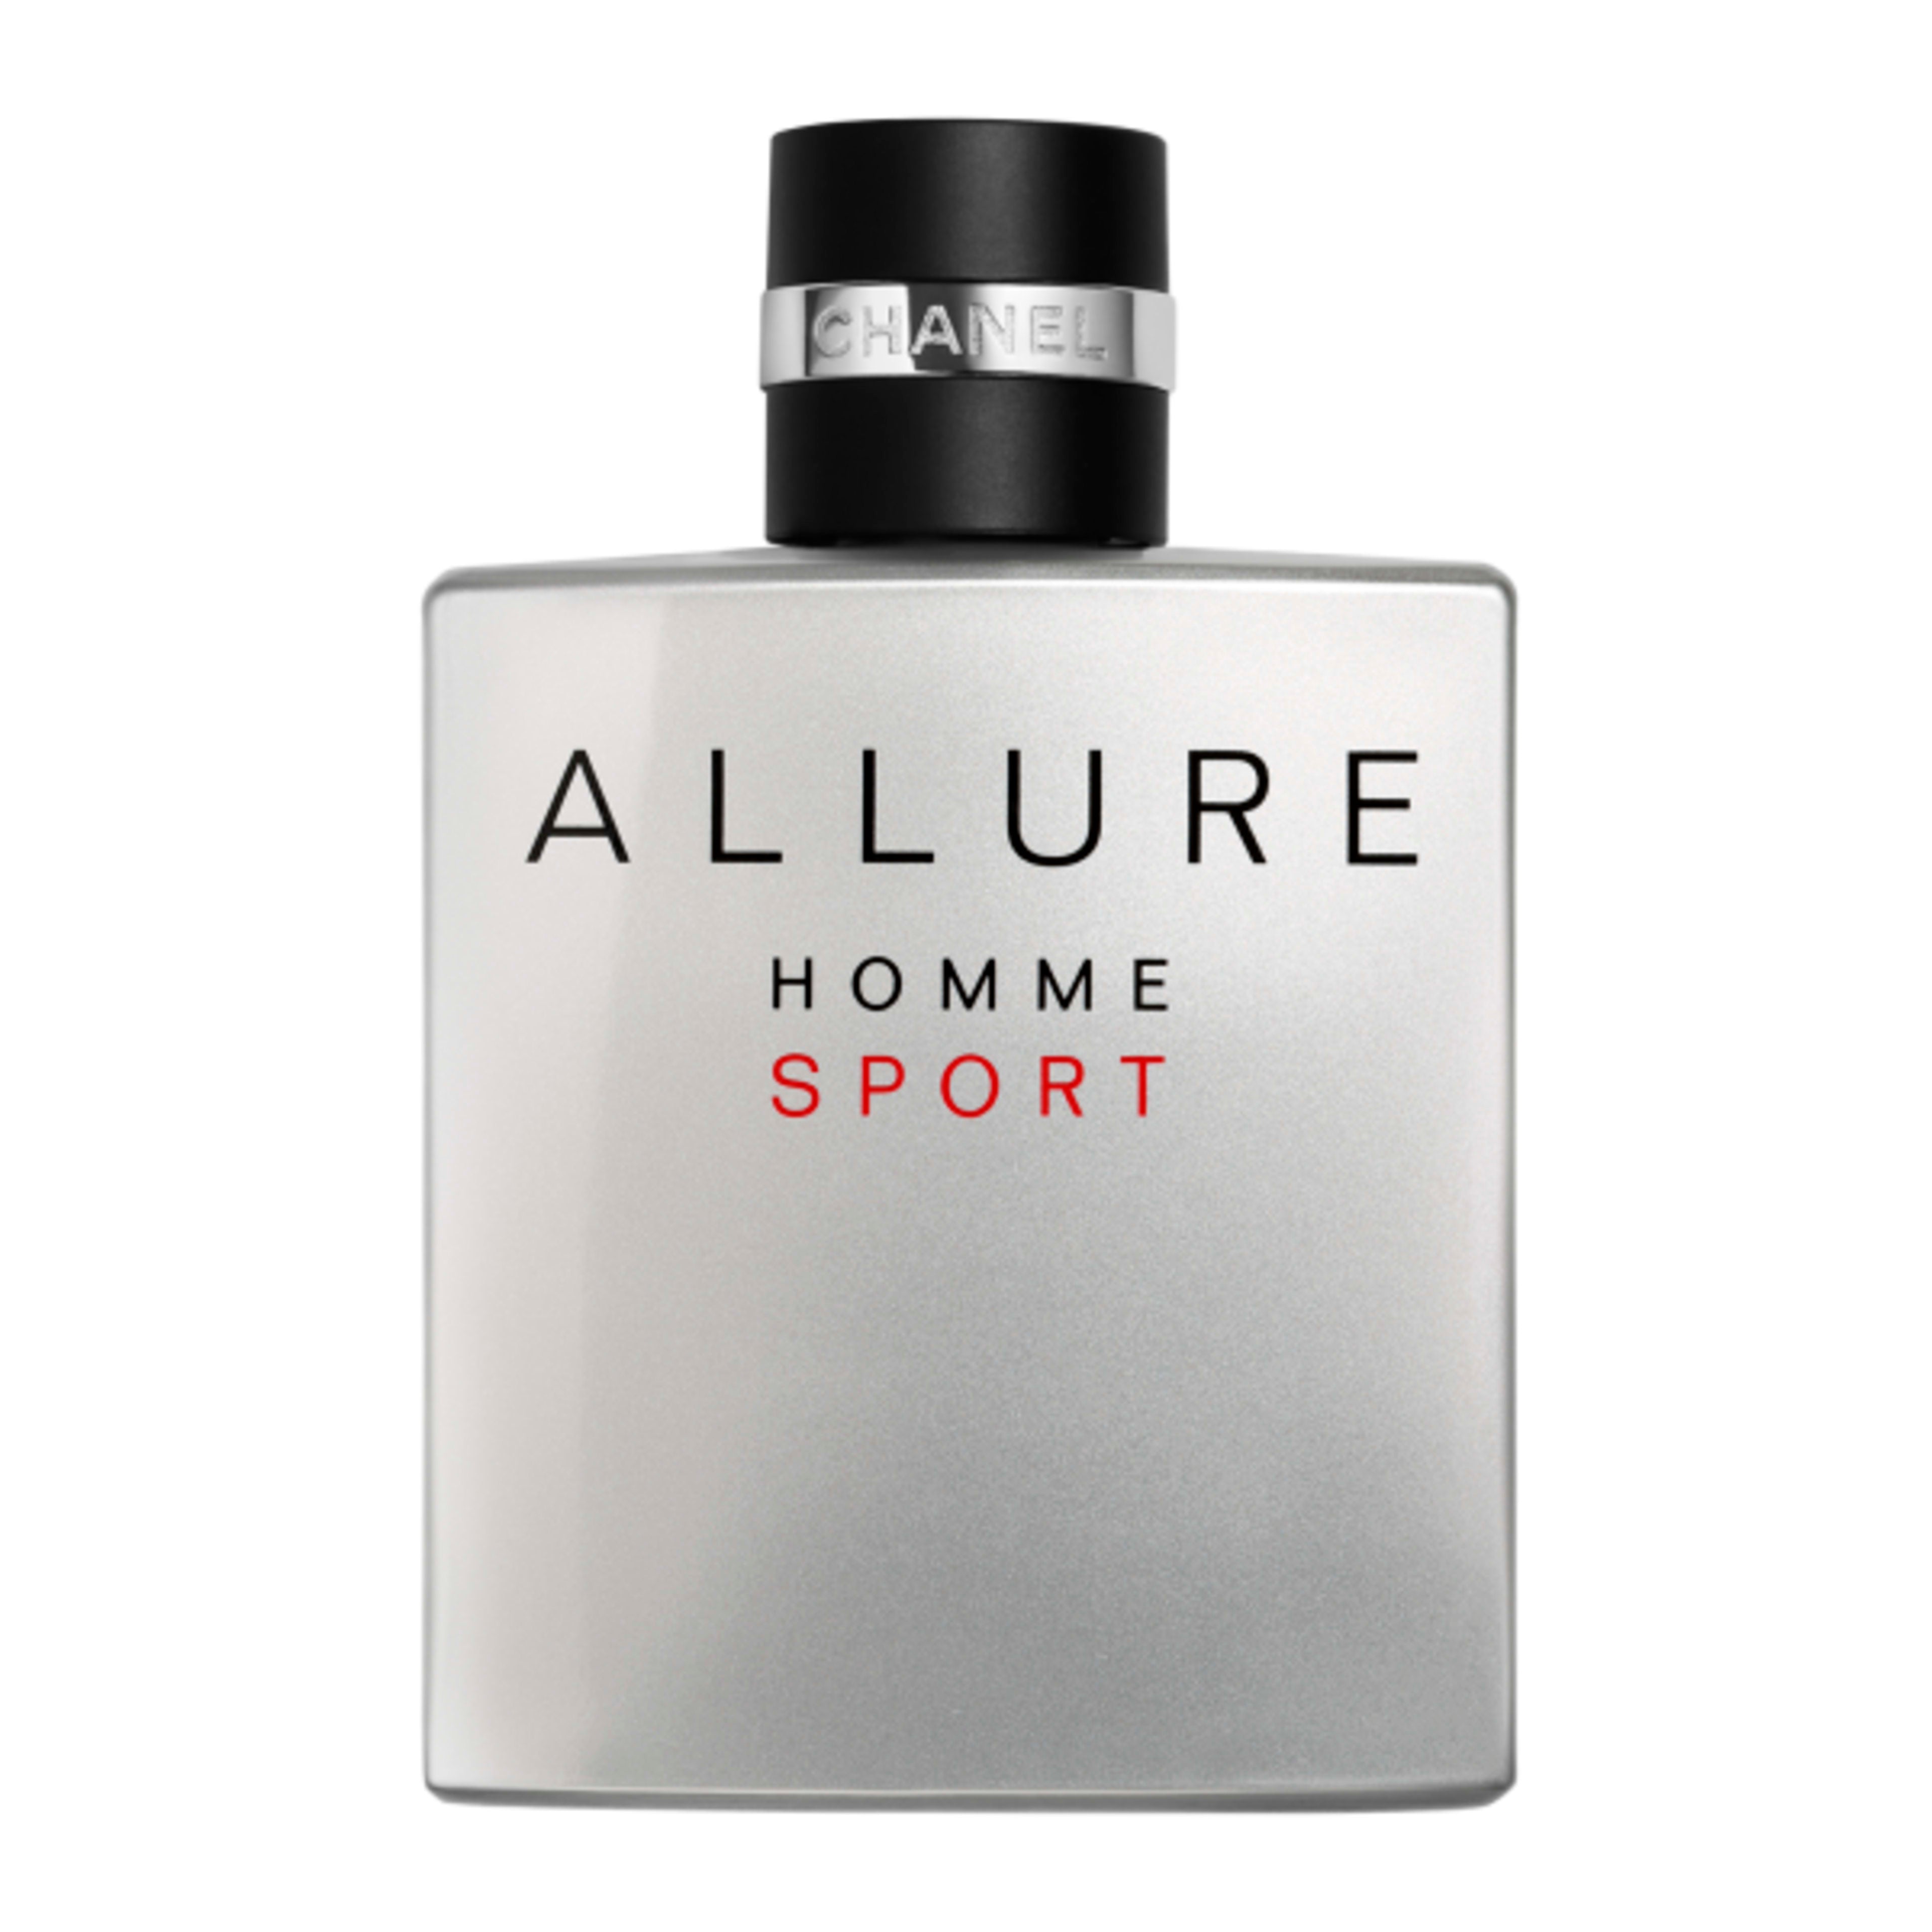 Allure Homme Sport Eau de Toilette - 100ml EDT {unboxed]